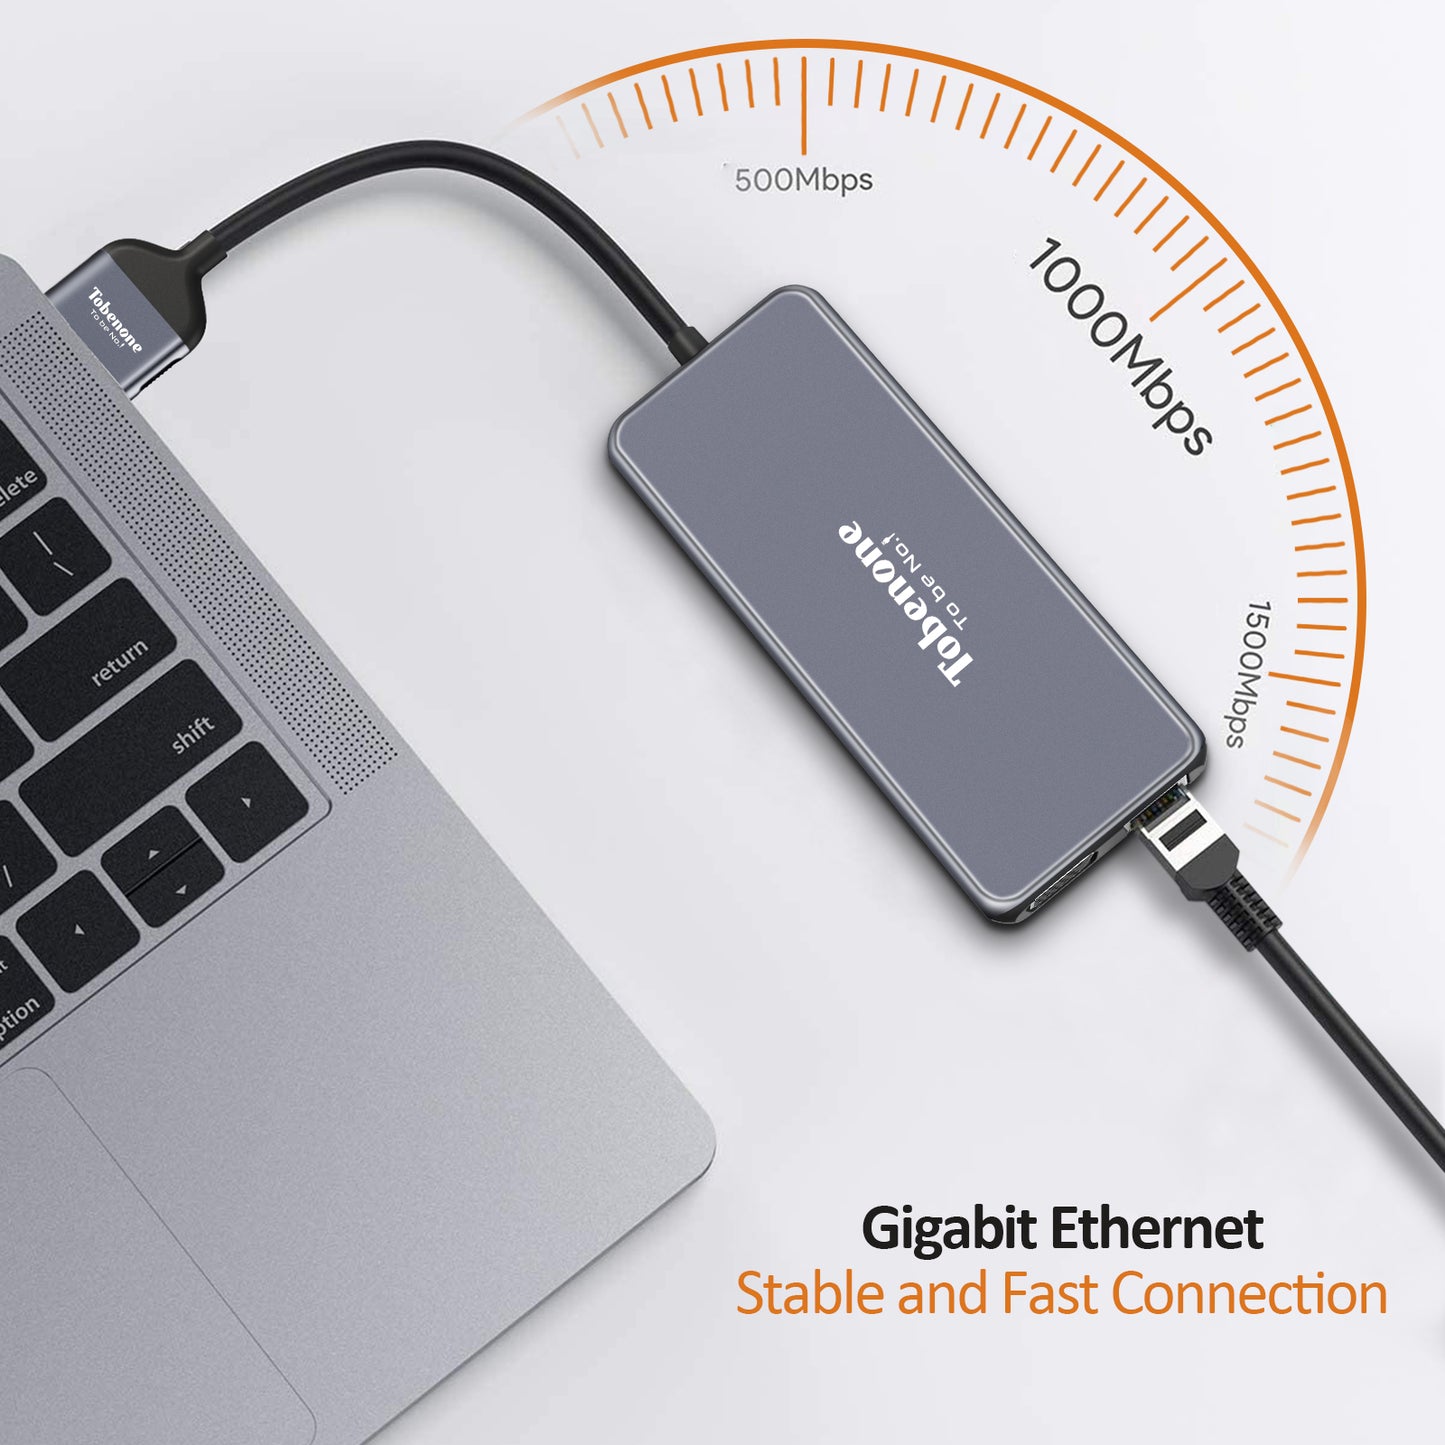 UDS011 MacBook docking station gigabit ethernet stable and fast connection